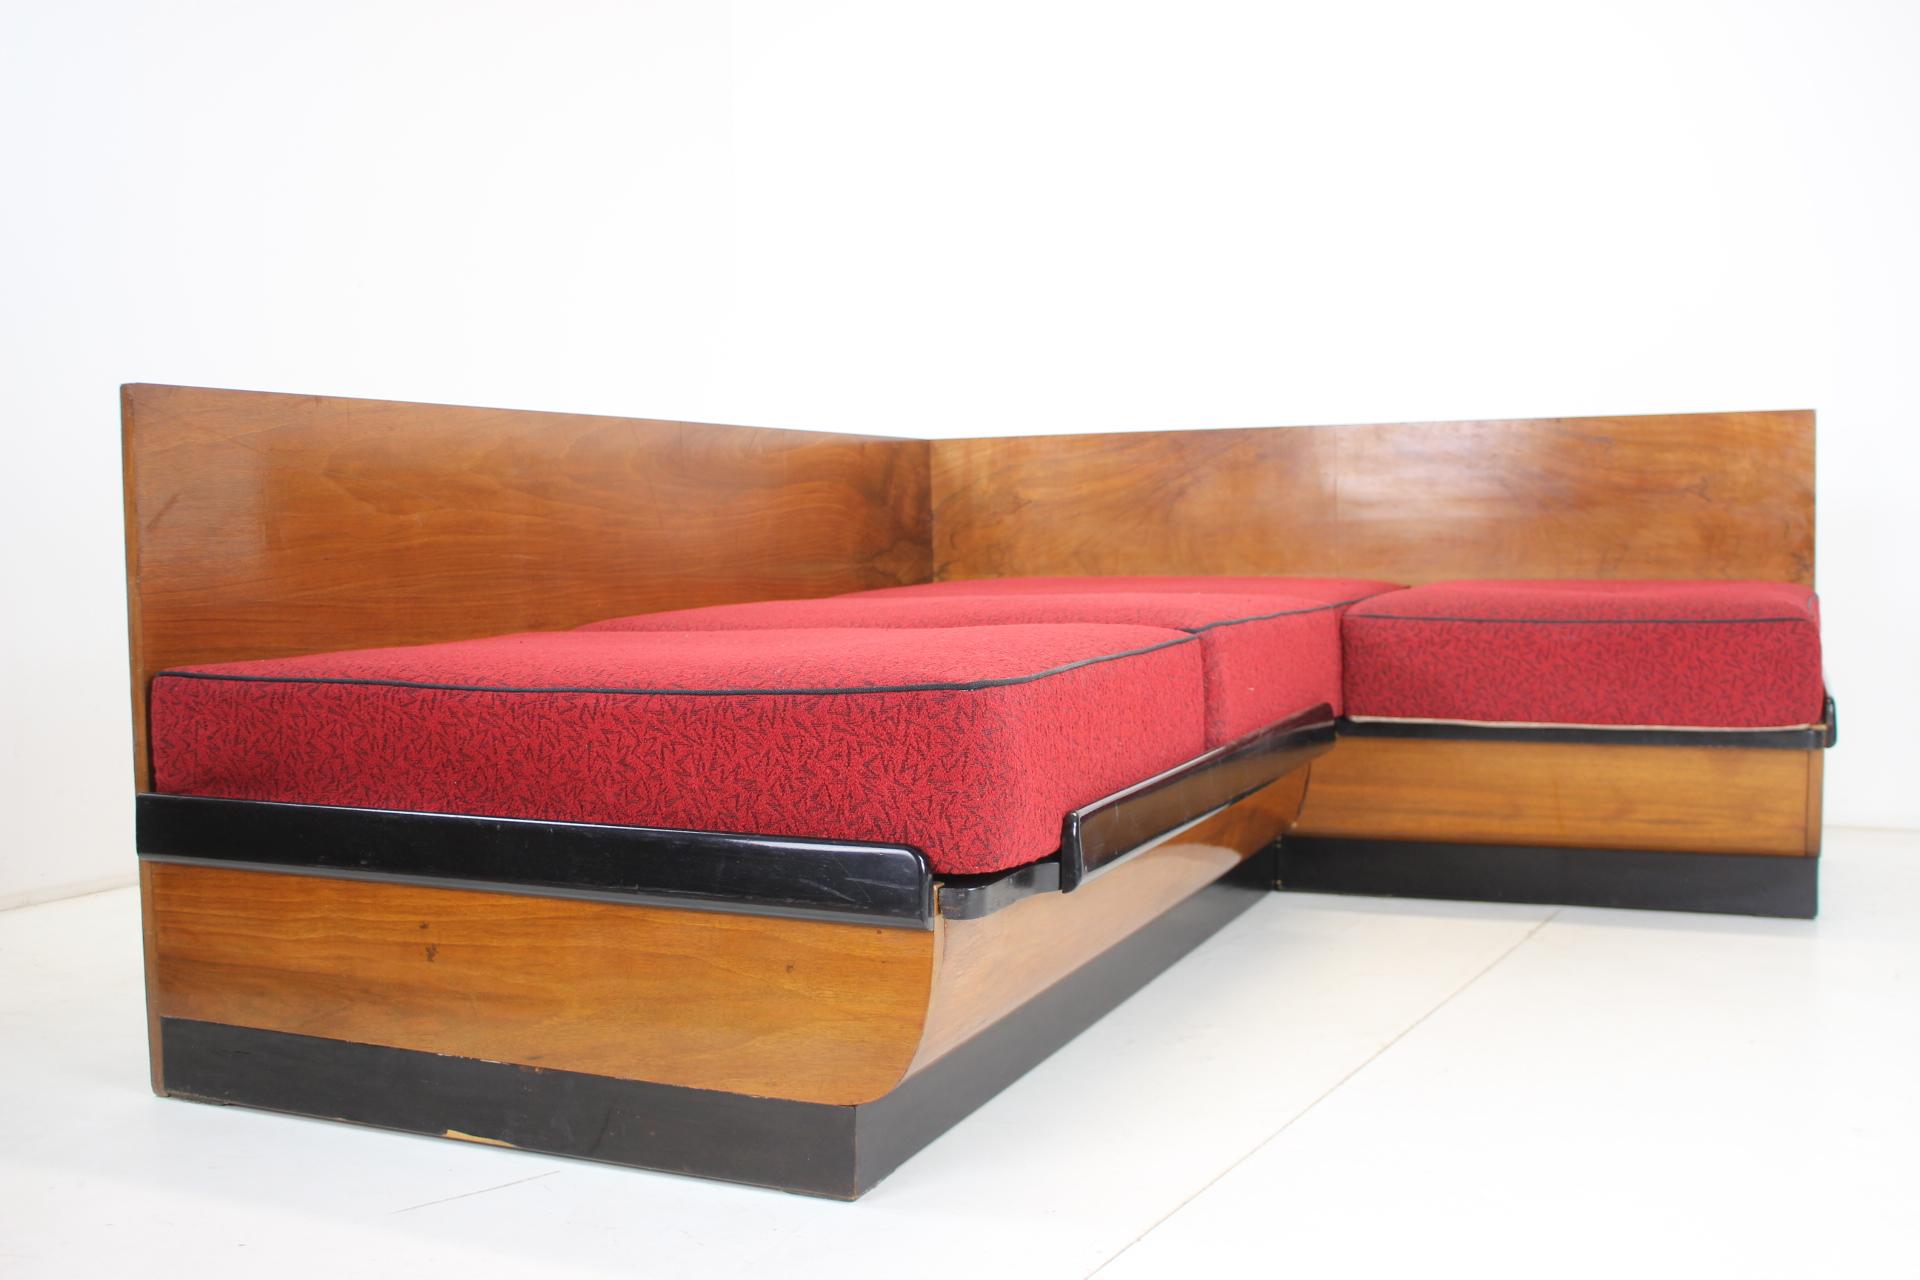 - Guter Originalzustand
- Das Sofa kann in ein Bett umgewandelt werden
- Polsterung aus Stoff mit leichten Gebrauchsspuren
- ausgeklappt, Größe 190cm / 153cm
- Sitzhöhe 47 cm
- Matratzen sind gefedert.
- Holzteile weisen Gebrauchsspuren